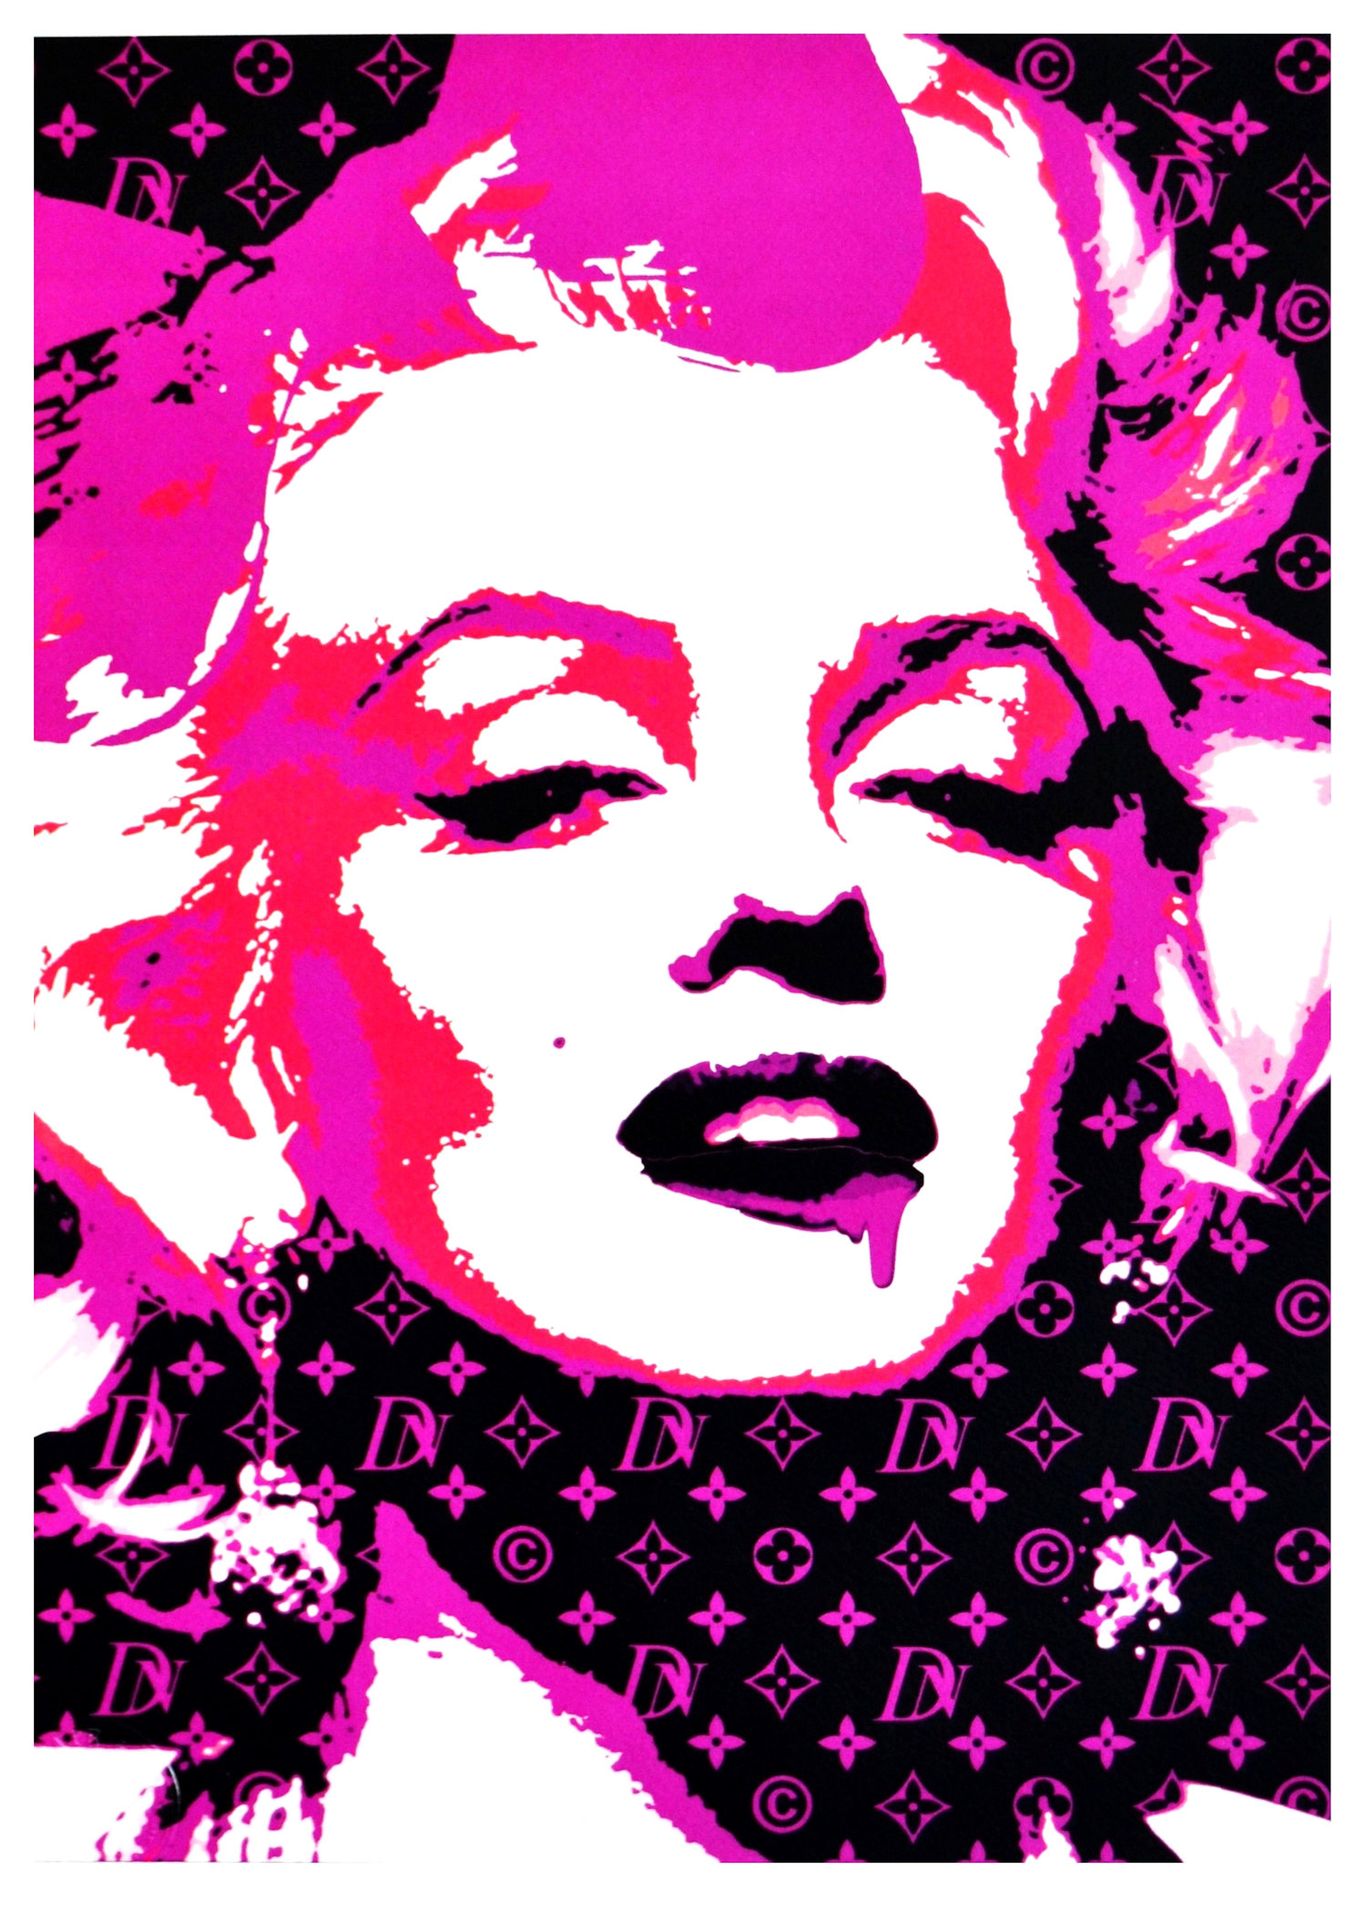 Death NYC Muerte NYC

Monroe Glow Pink 2015

Serigrafía.

Edición limitada de 10&hellip;